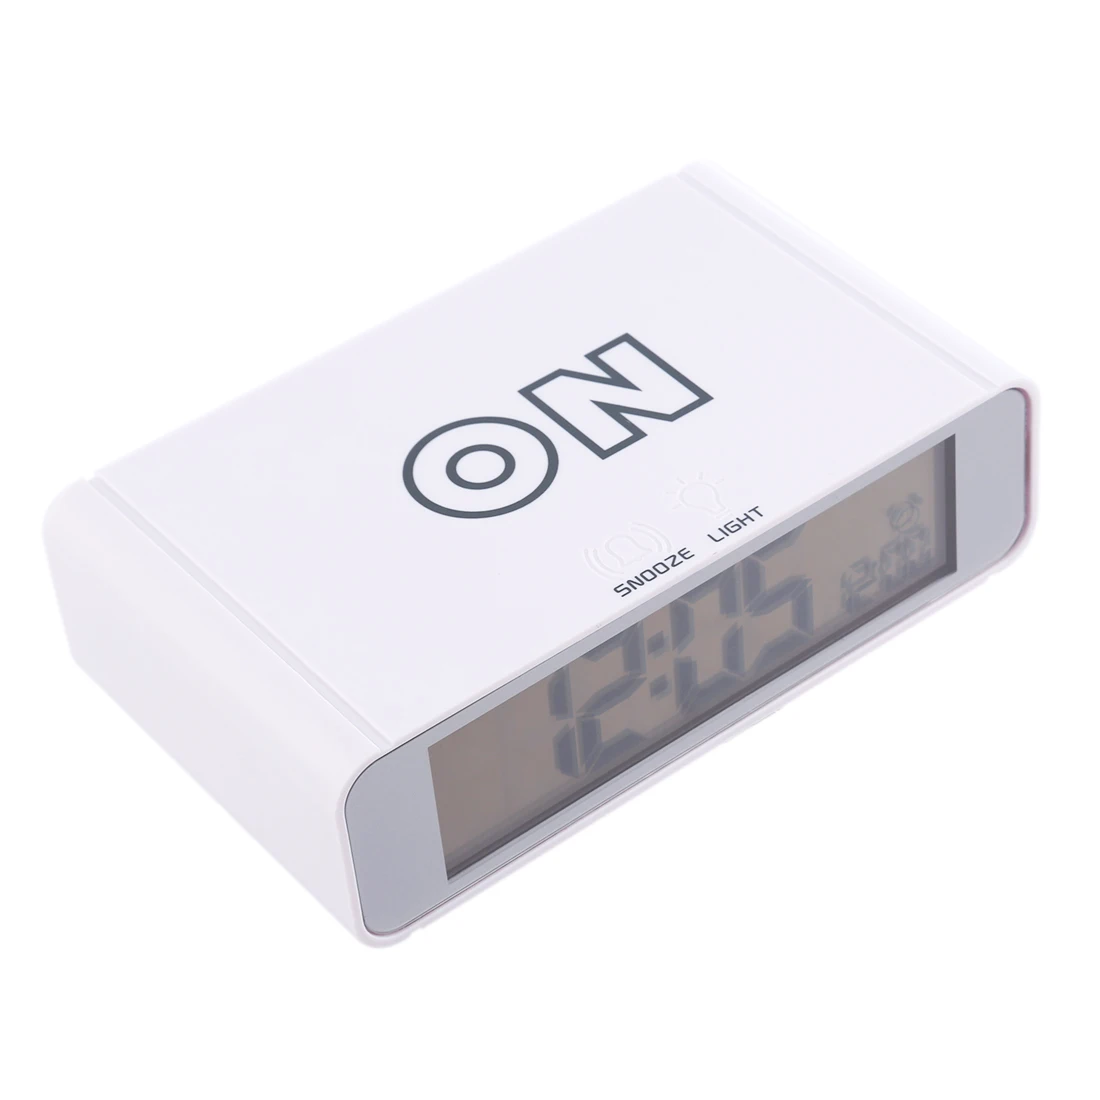 Homingdeco интеллектуальный цифровой будильник настольные часы Электронный Топ сенсорный датчик цифровой будильник настольные часы Белый